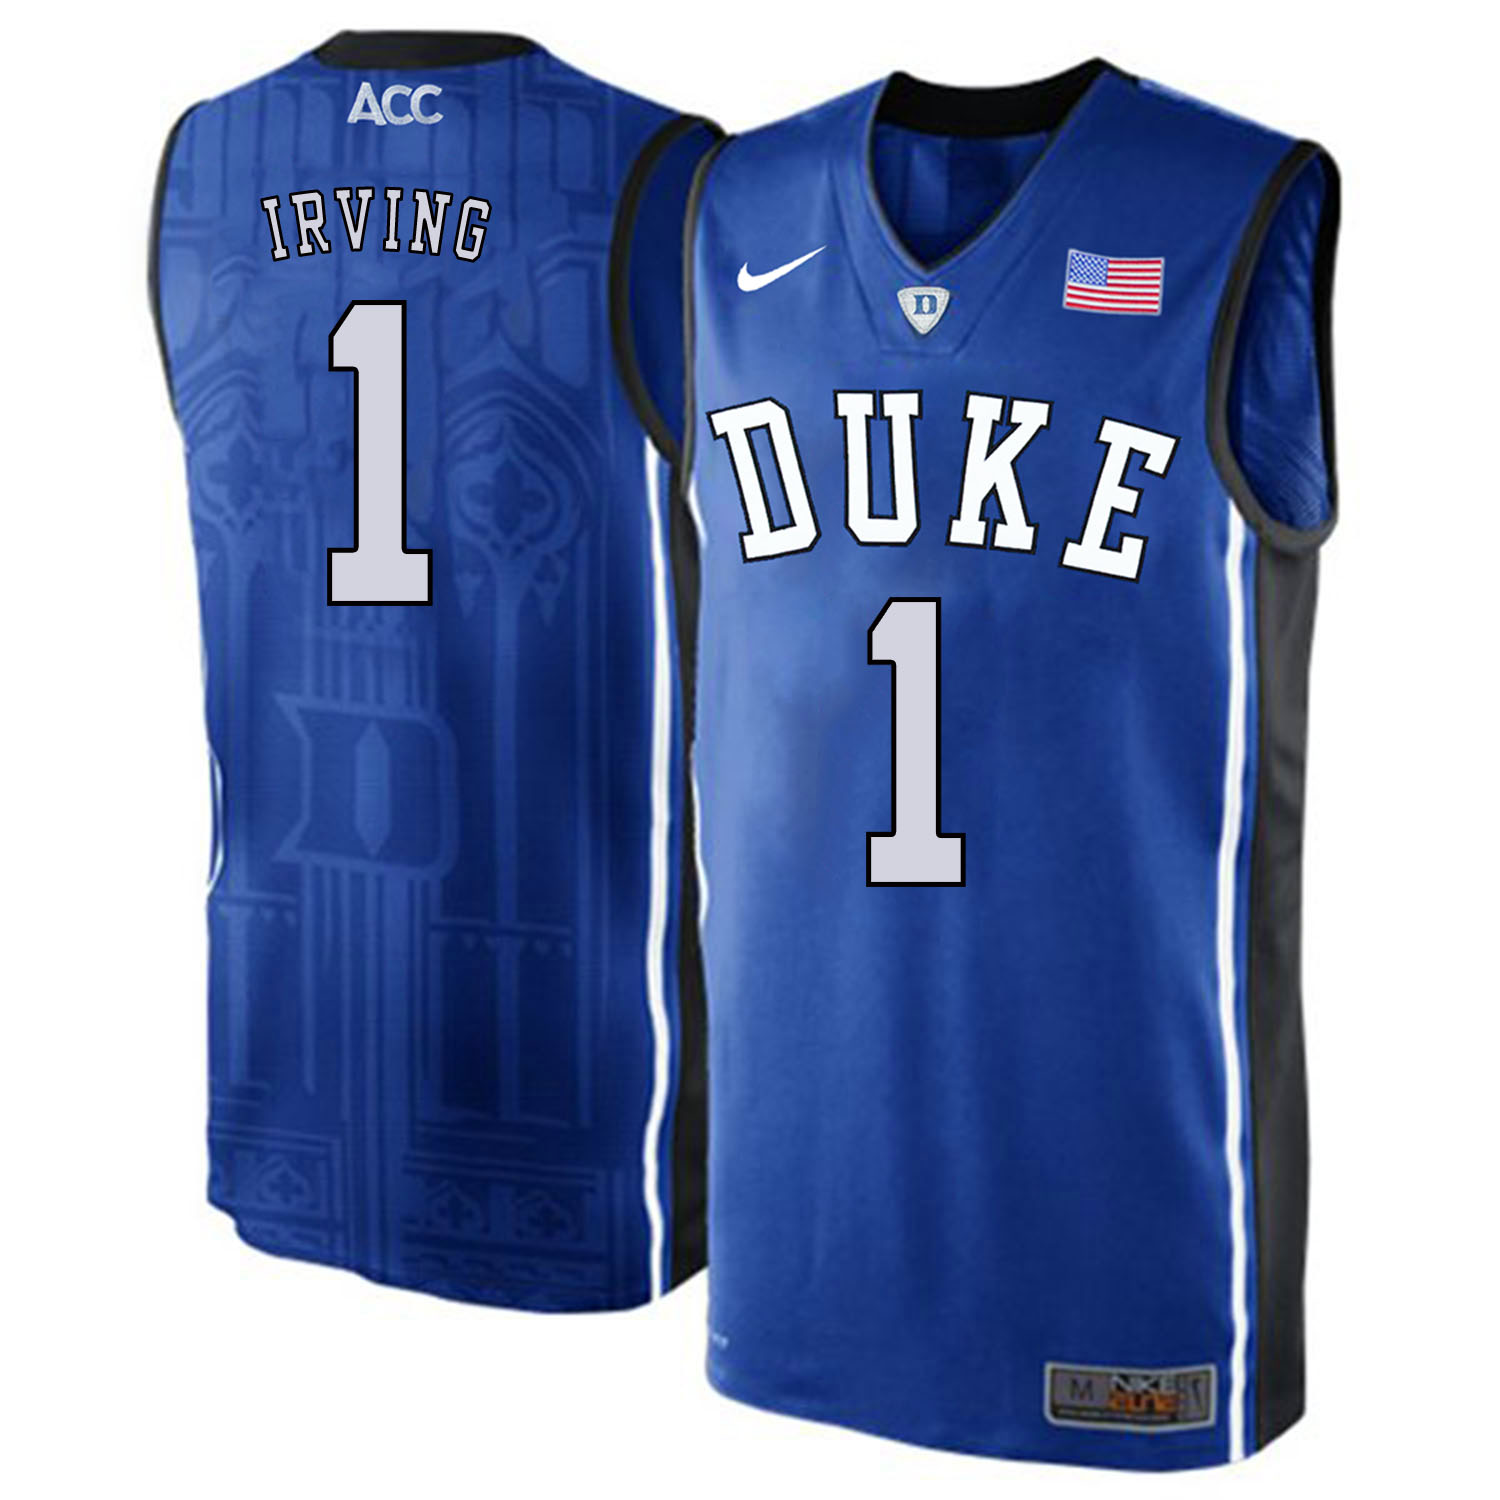 Duke Blue Devils 1 Kyrie Irving Blue Elite Nike College Basketabll Jersey